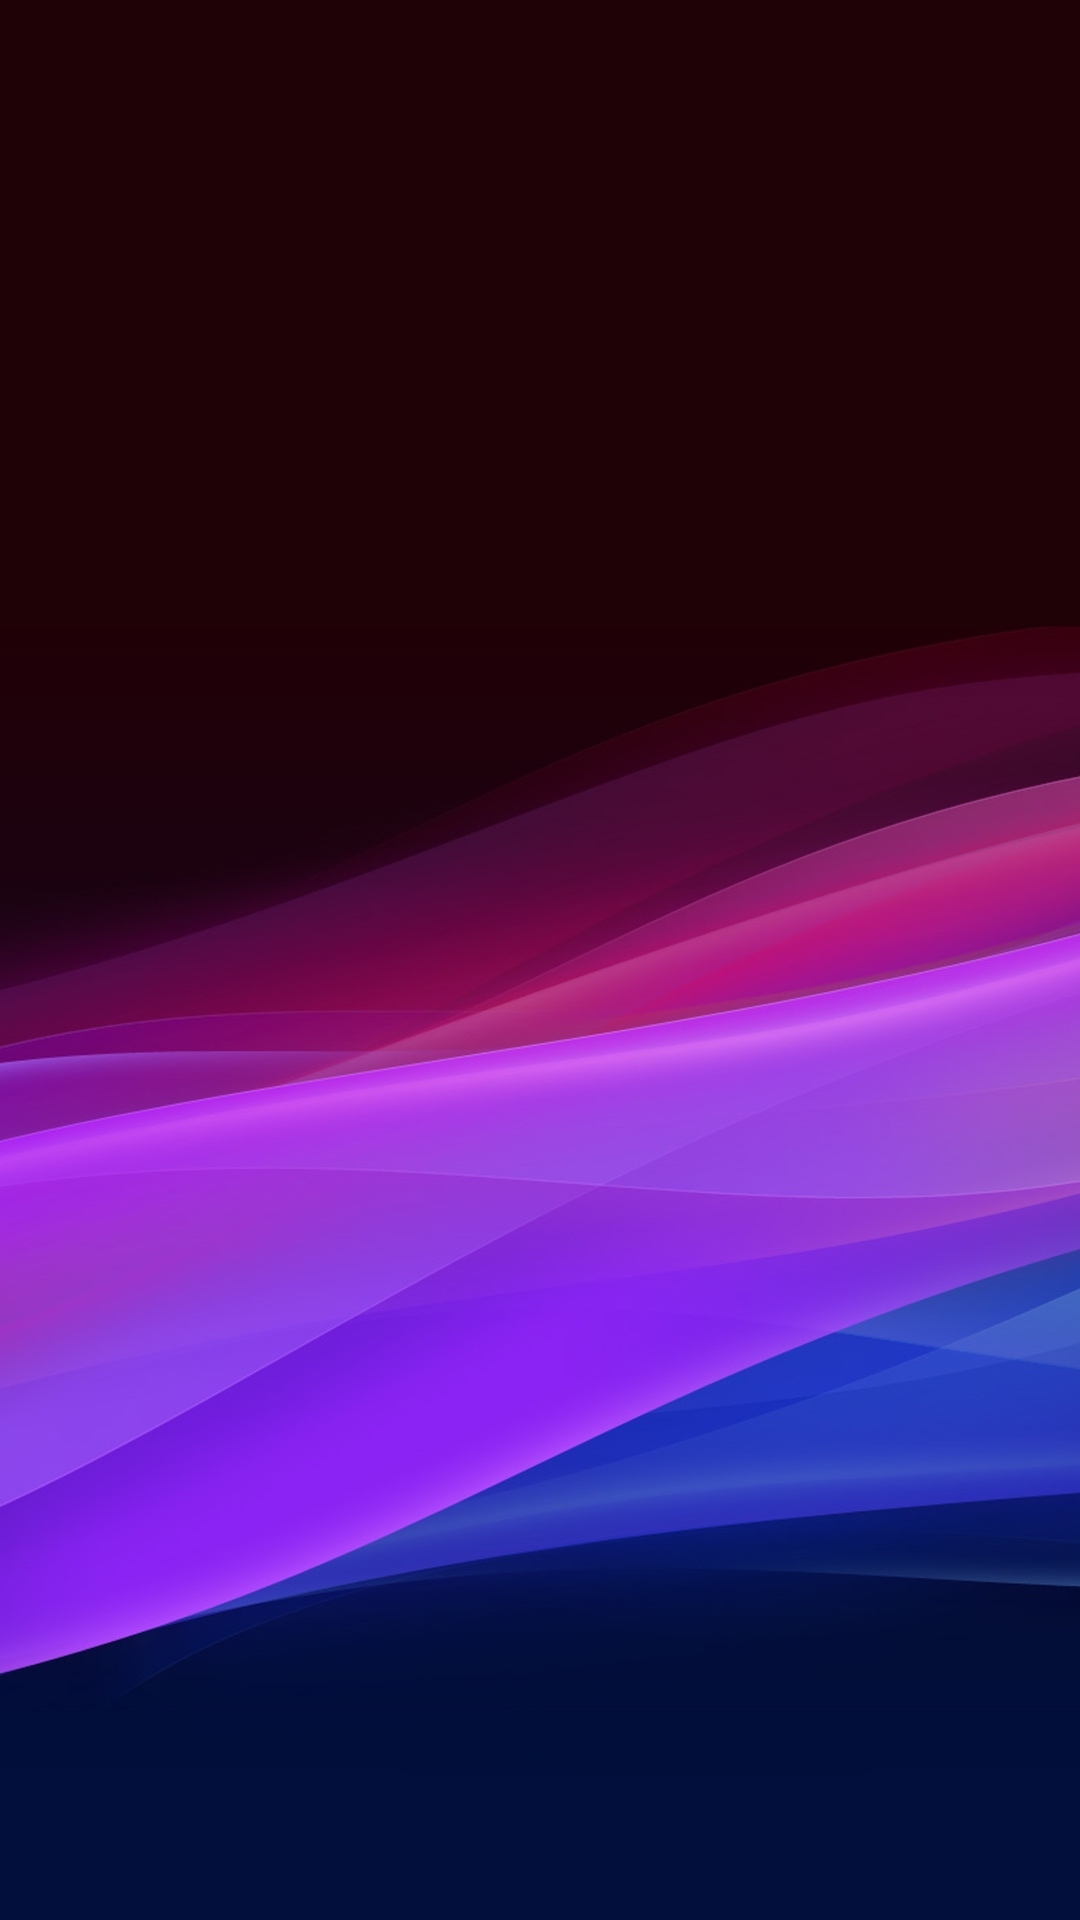 fondos de pantalla huawei p9 lite,violeta,azul,púrpura,ligero,rosado